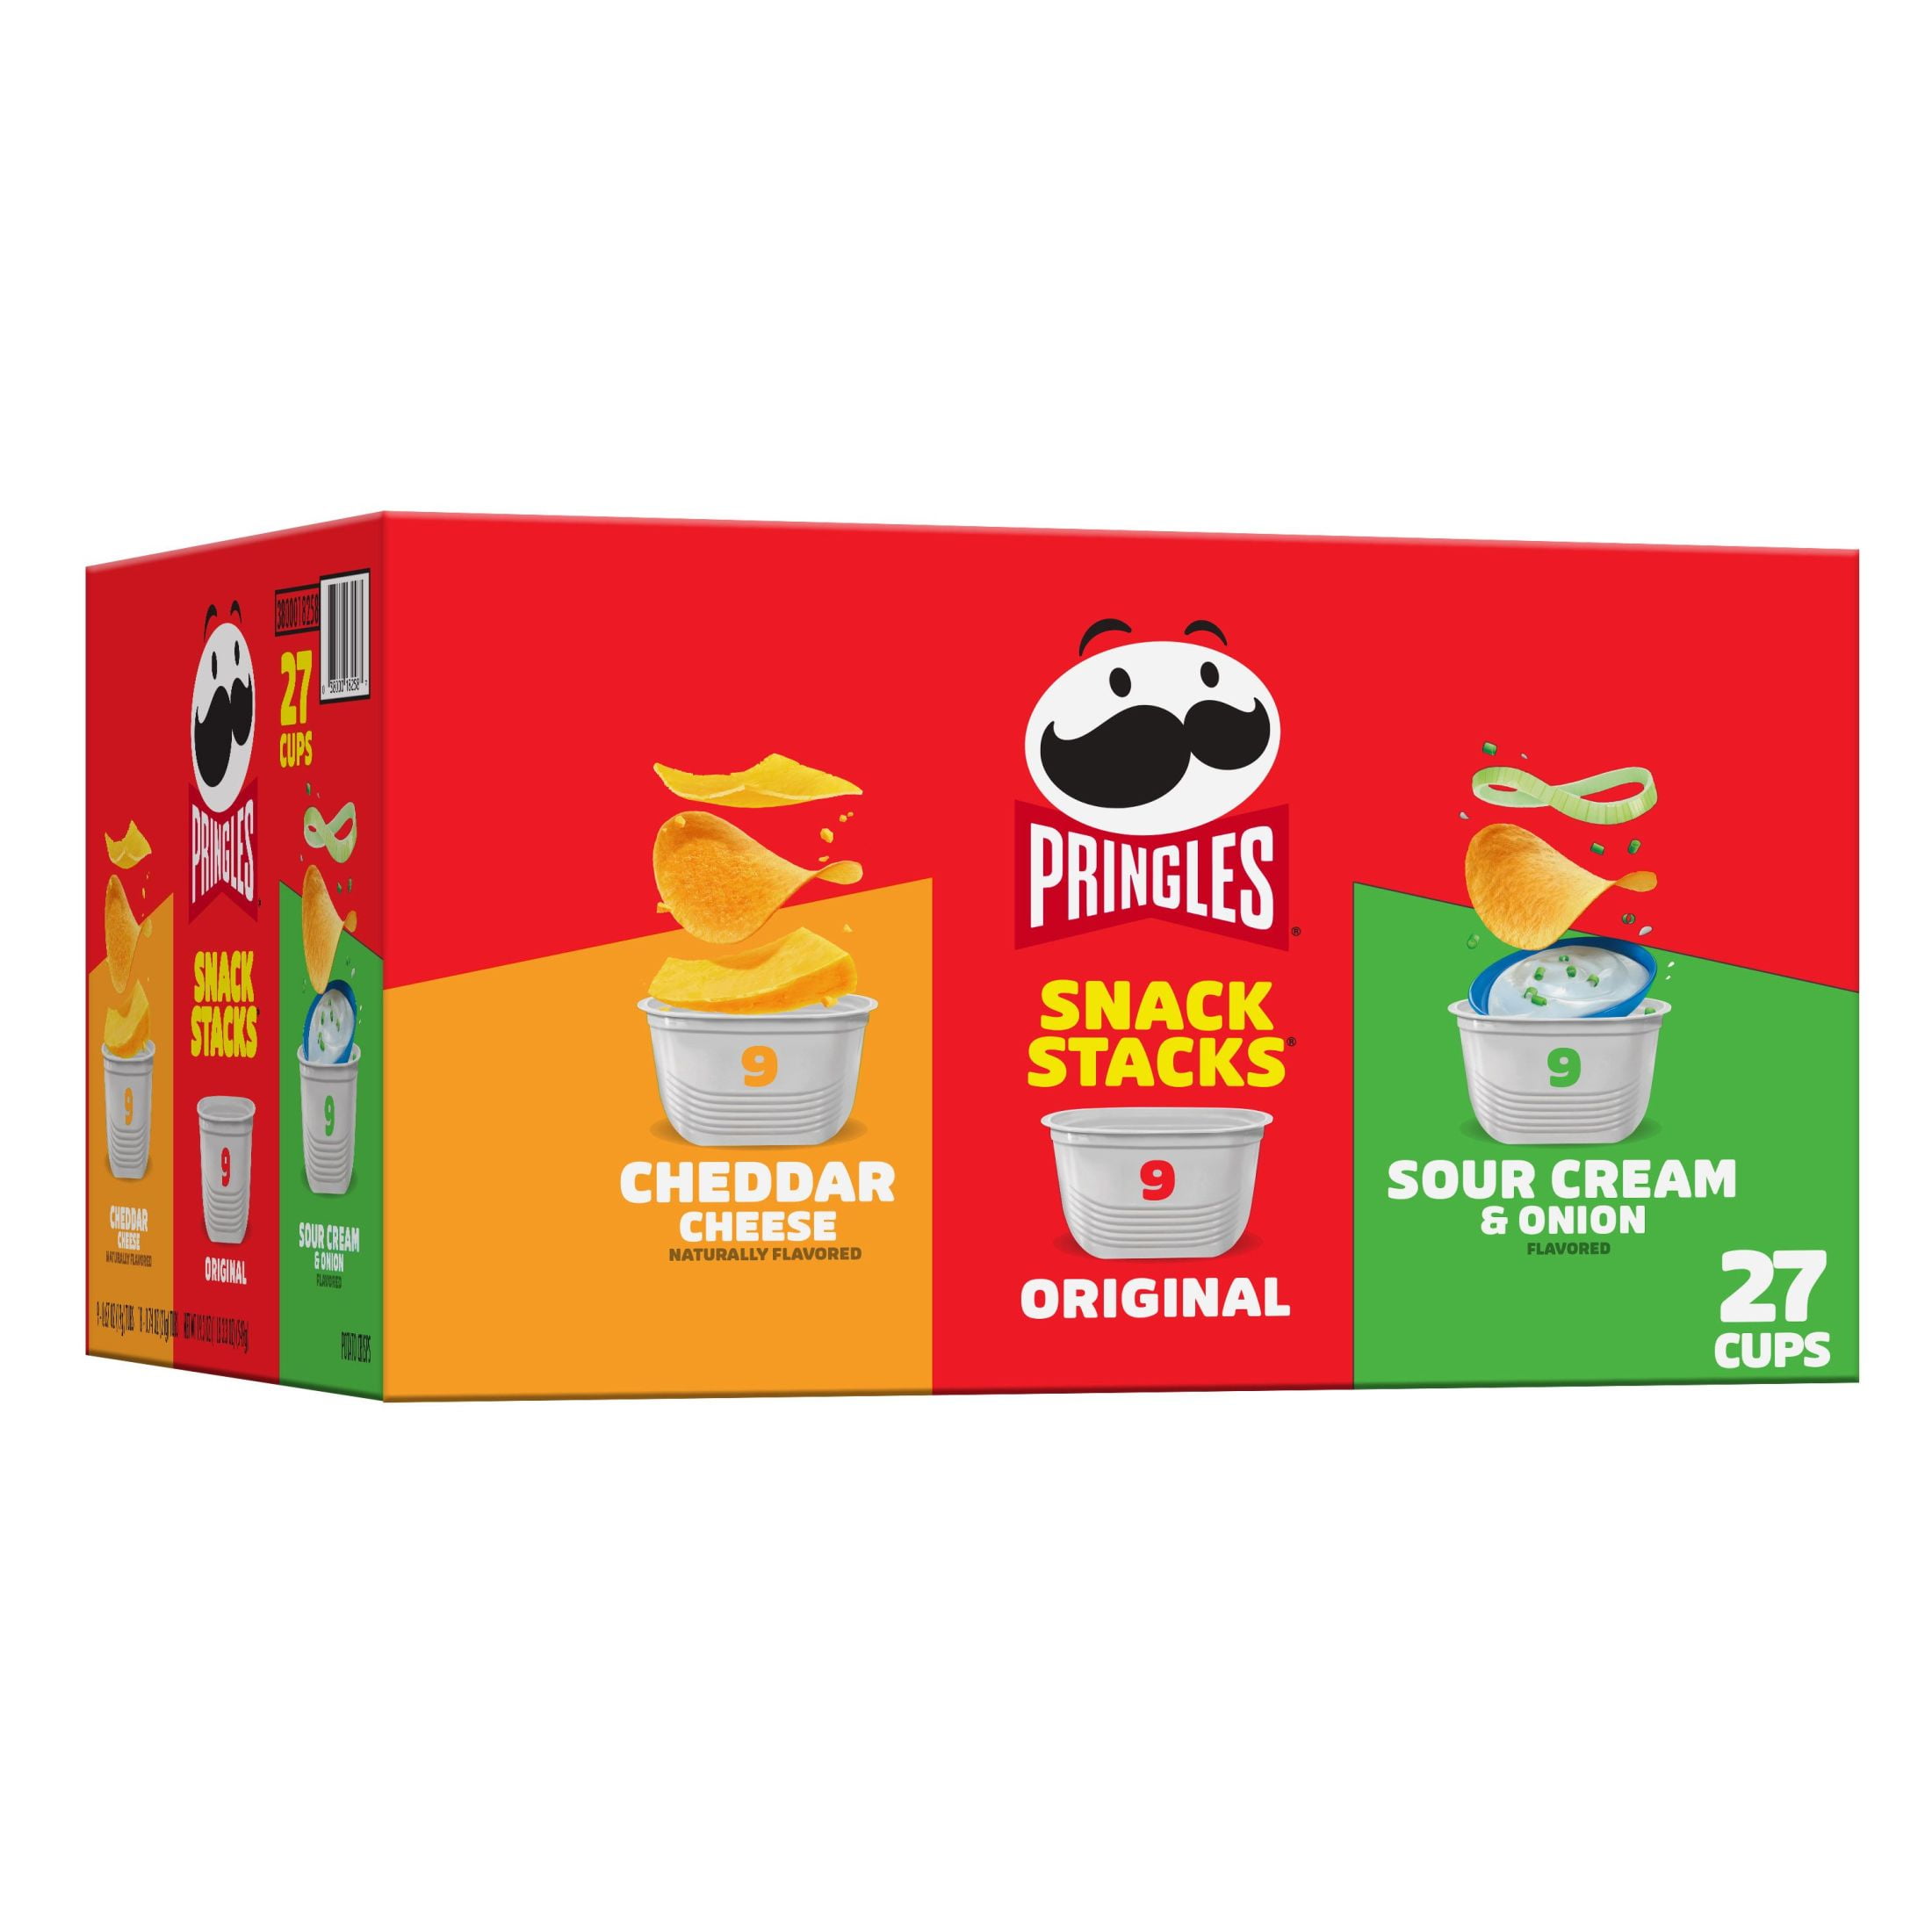 Pringles Snack Stacks Variety Pack Potato Crisps Chips, 19.3 oz, 27 Count